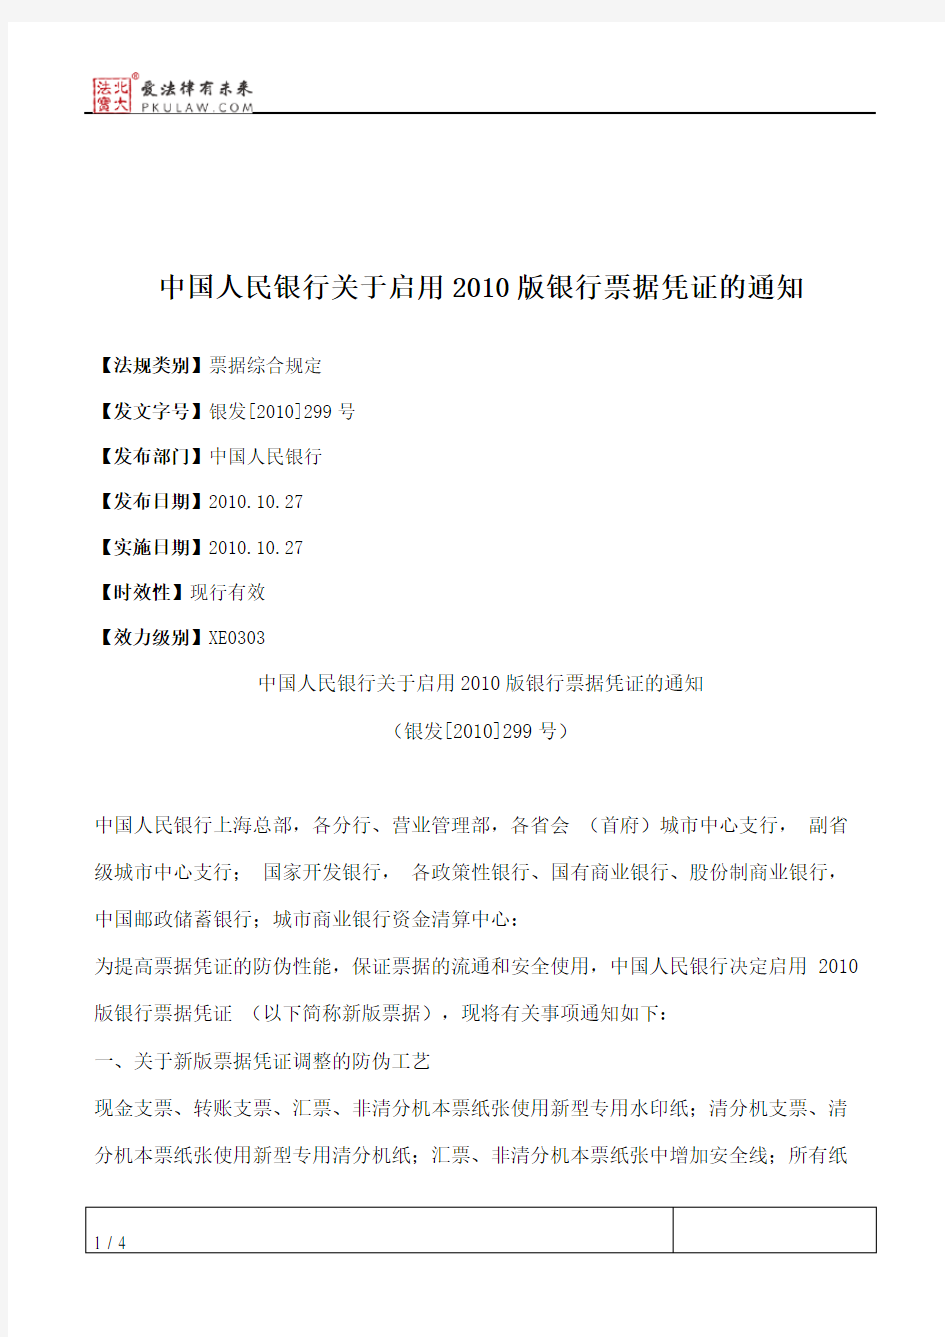 中国人民银行关于启用2010版银行票据凭证的通知